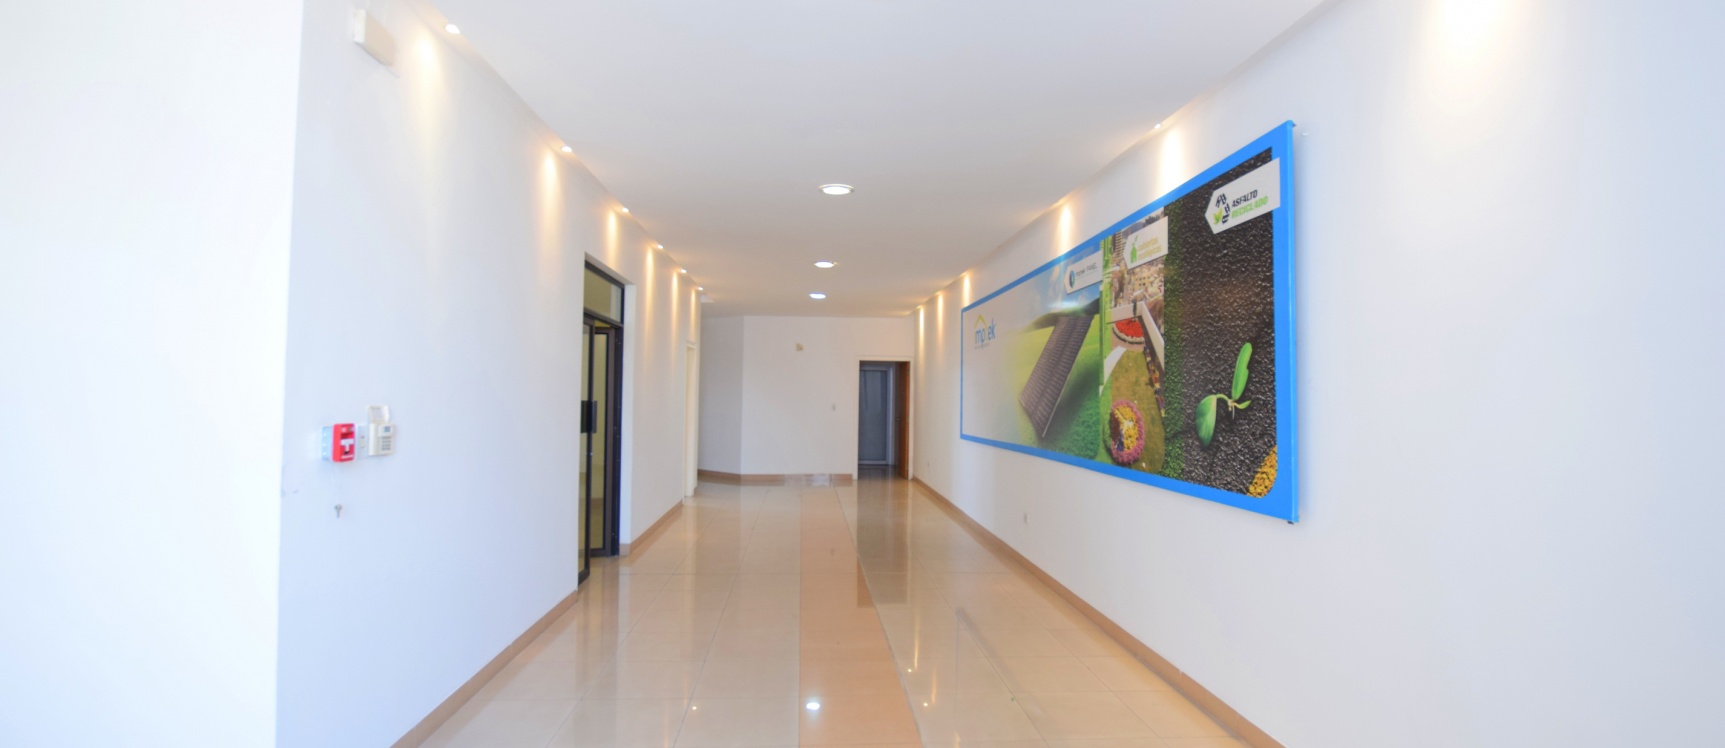 GeoBienes - Oficina en alquiler ubicada en Cdla. Naval Norte - Plusvalia Guayaquil Casas de venta y alquiler Inmobiliaria Ecuador